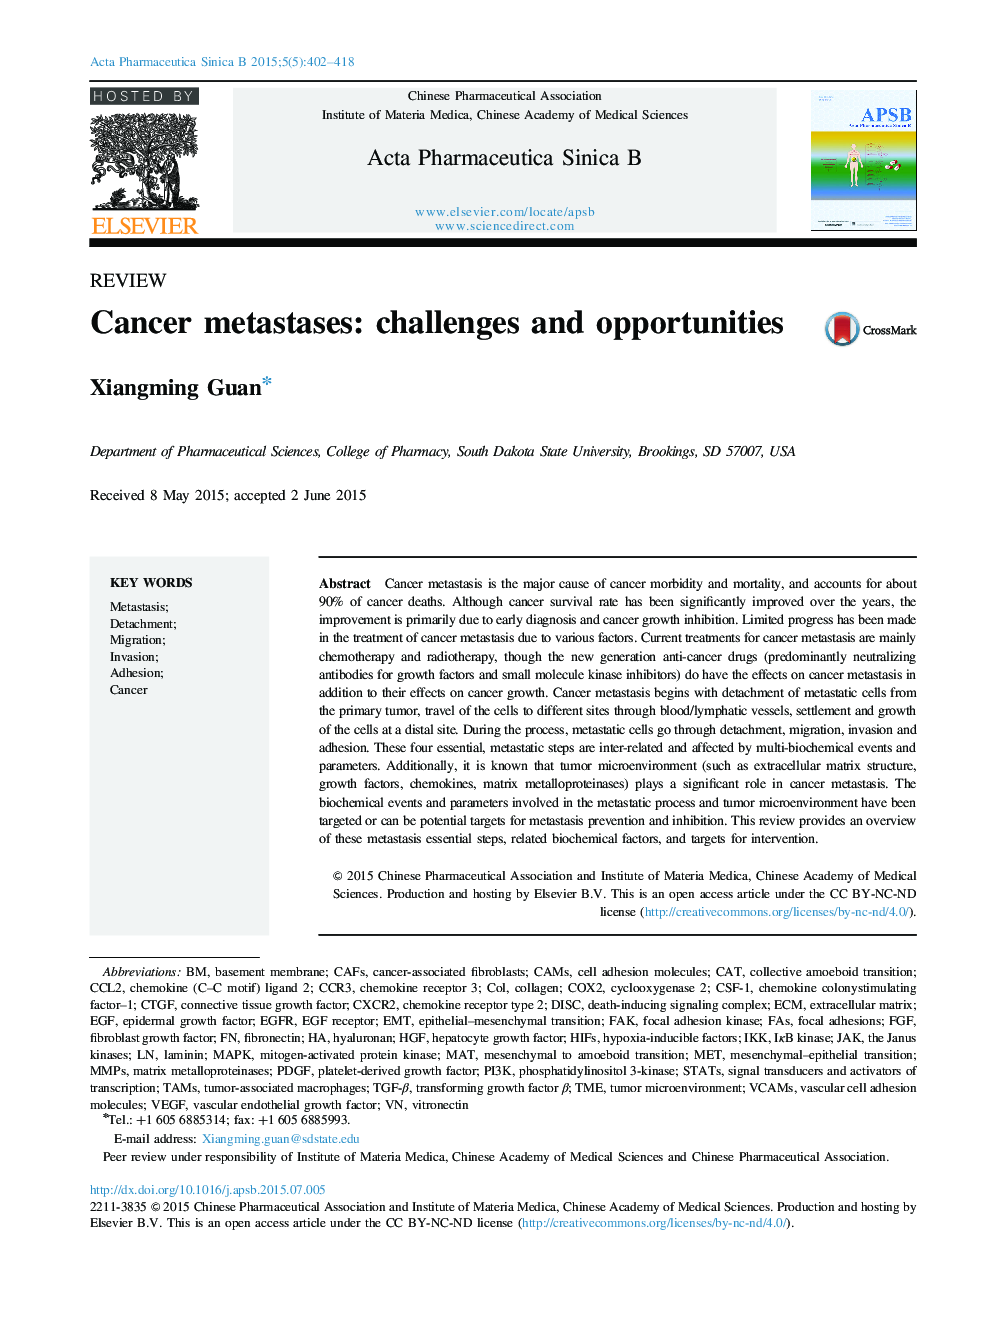 متاستاز سرطان: چالش ها و فرصت ها 